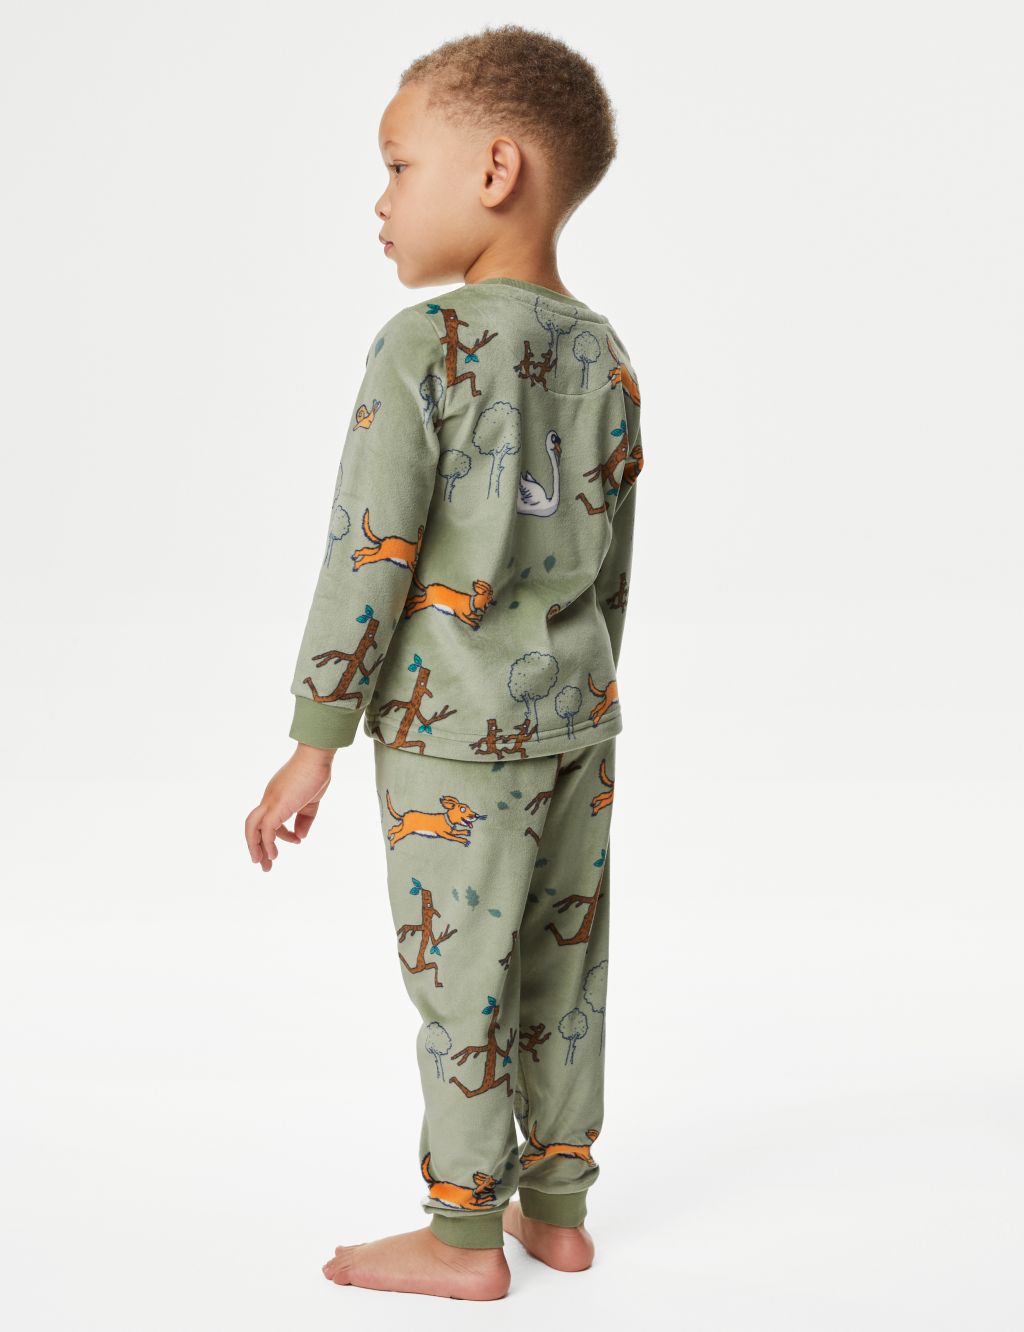 Stick Man™ Velour Pyjamas (1-8 Yrs) image 3